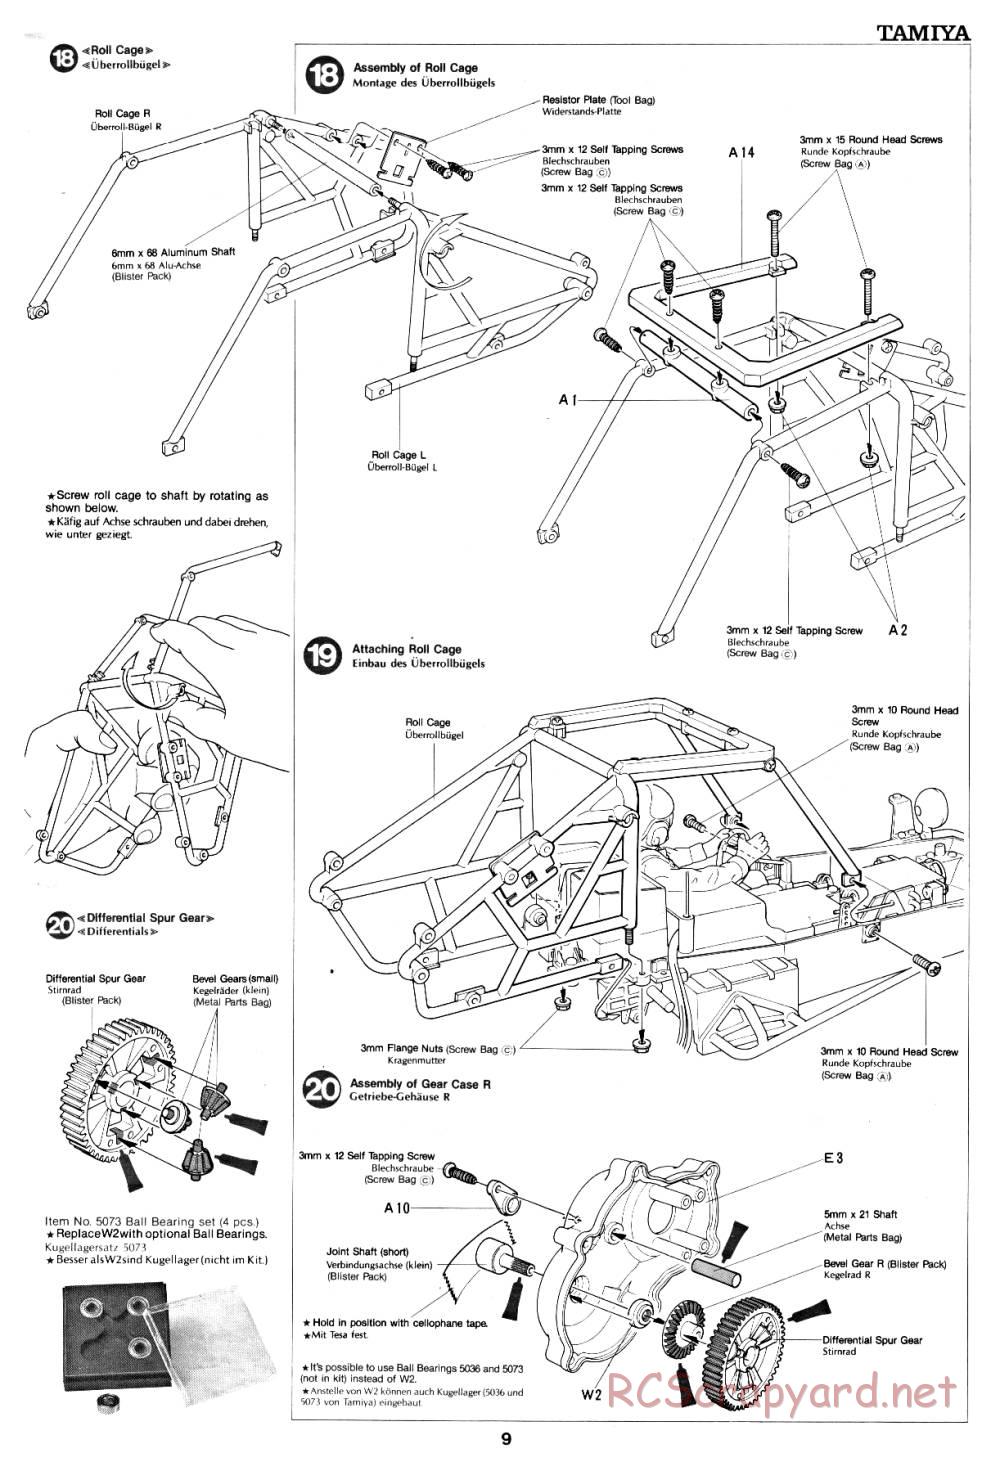 Tamiya - Fast Attack Vehicle - 58046 - Manual - Page 9